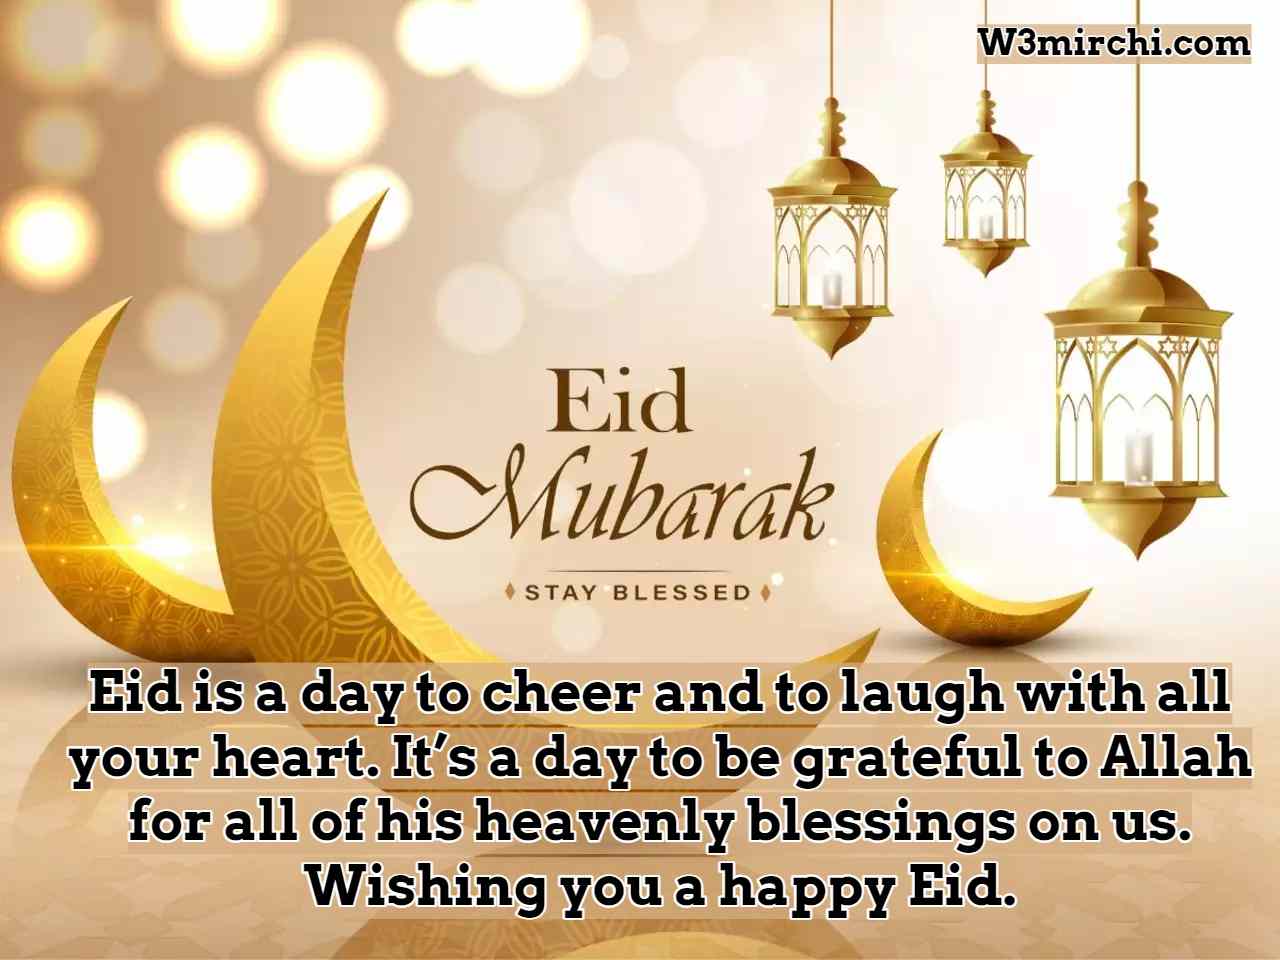 Wishing you a happy Eid.